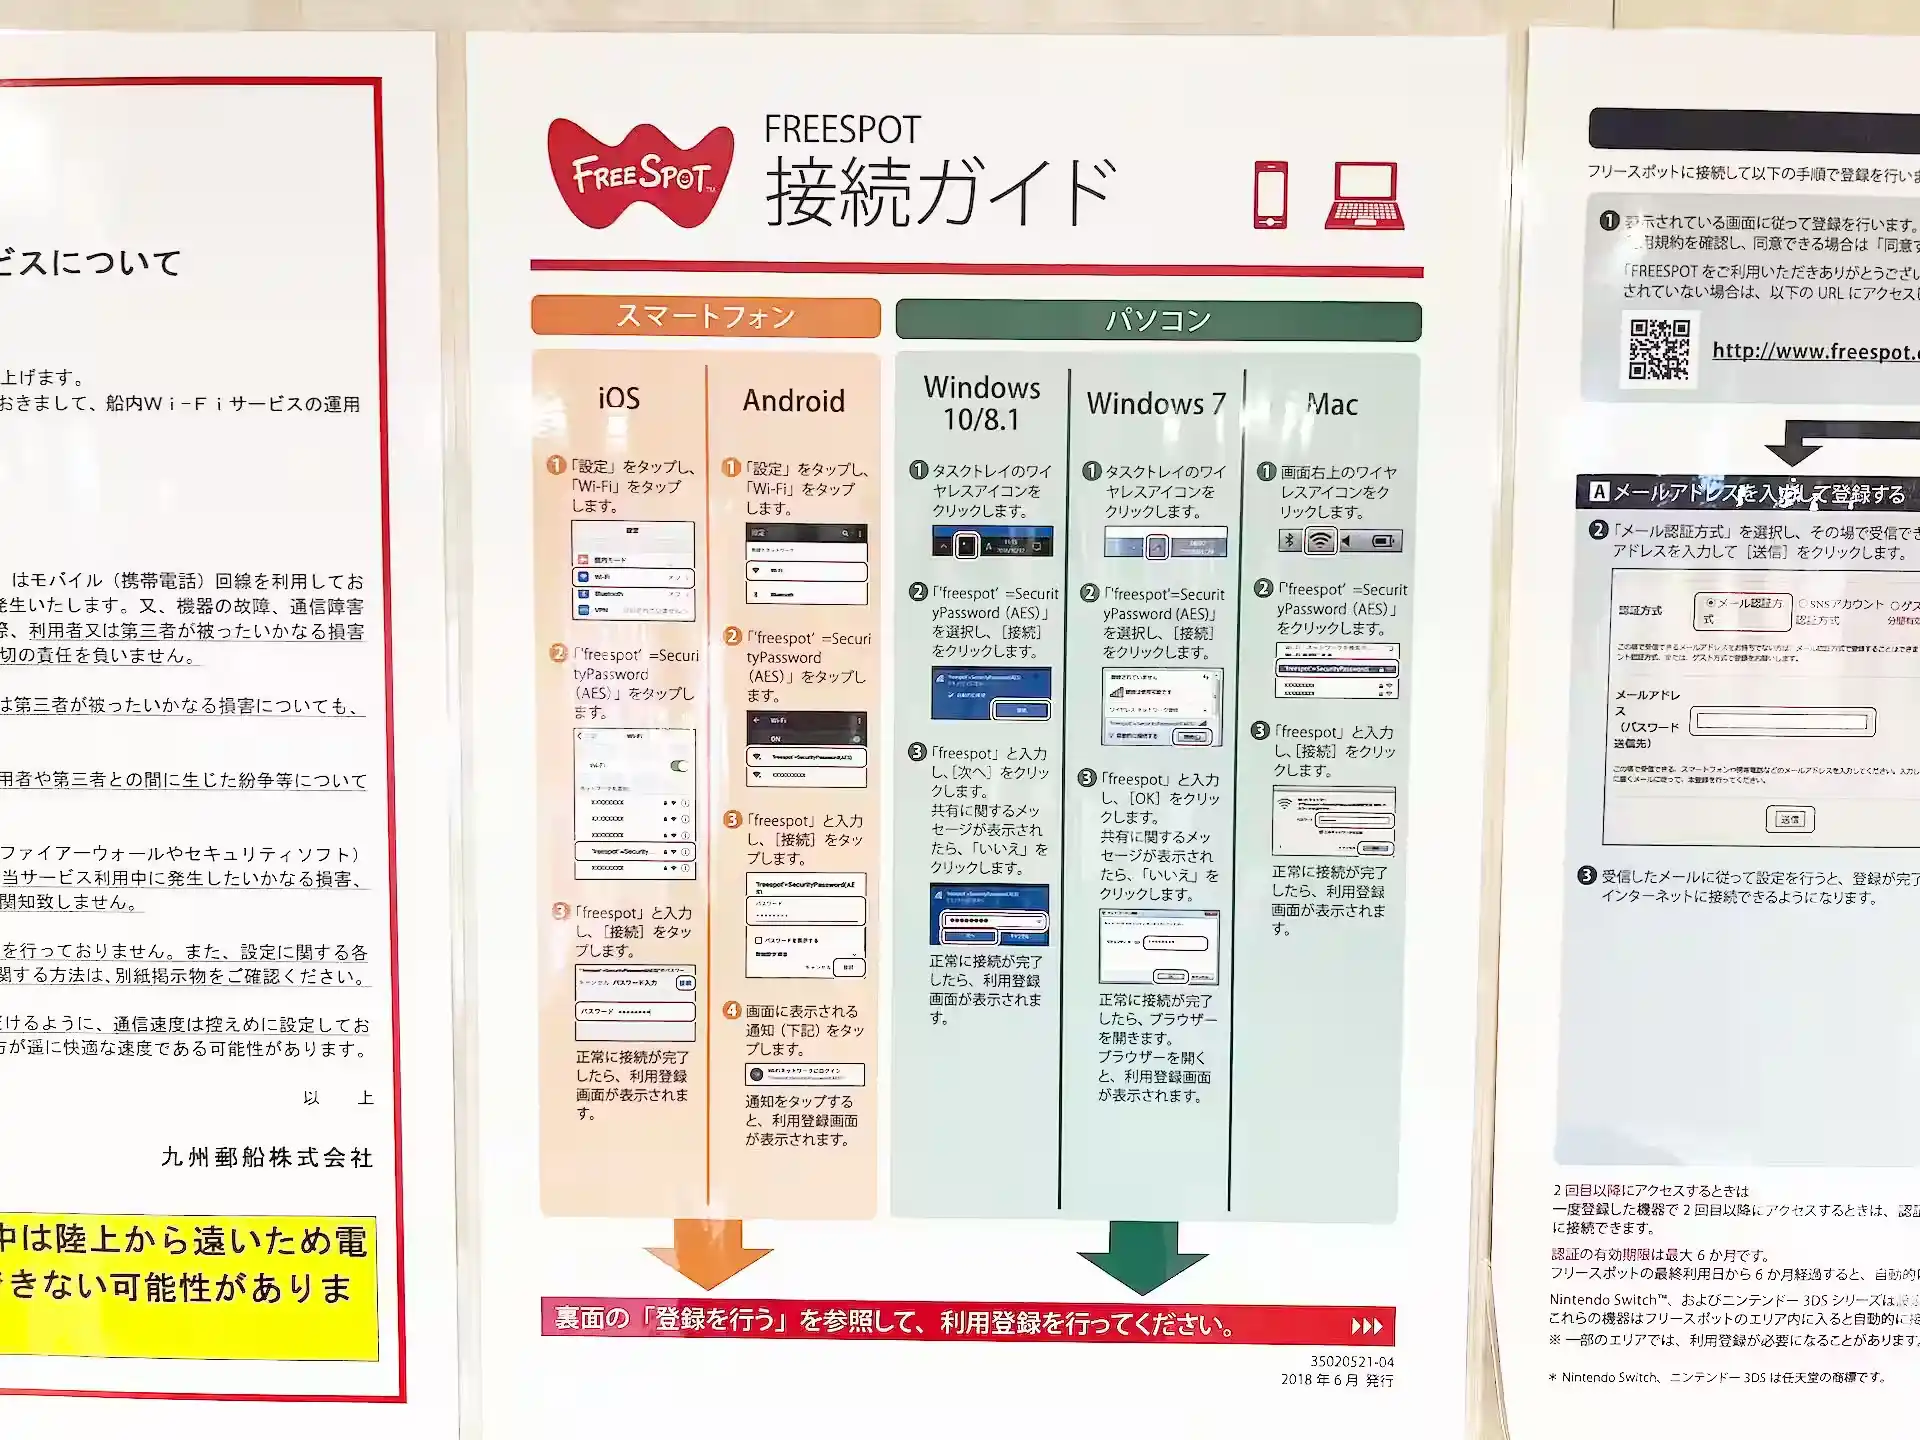 九州郵船うみてらし船内で使える無料Wi-Fiの利用方法が書かれた紙